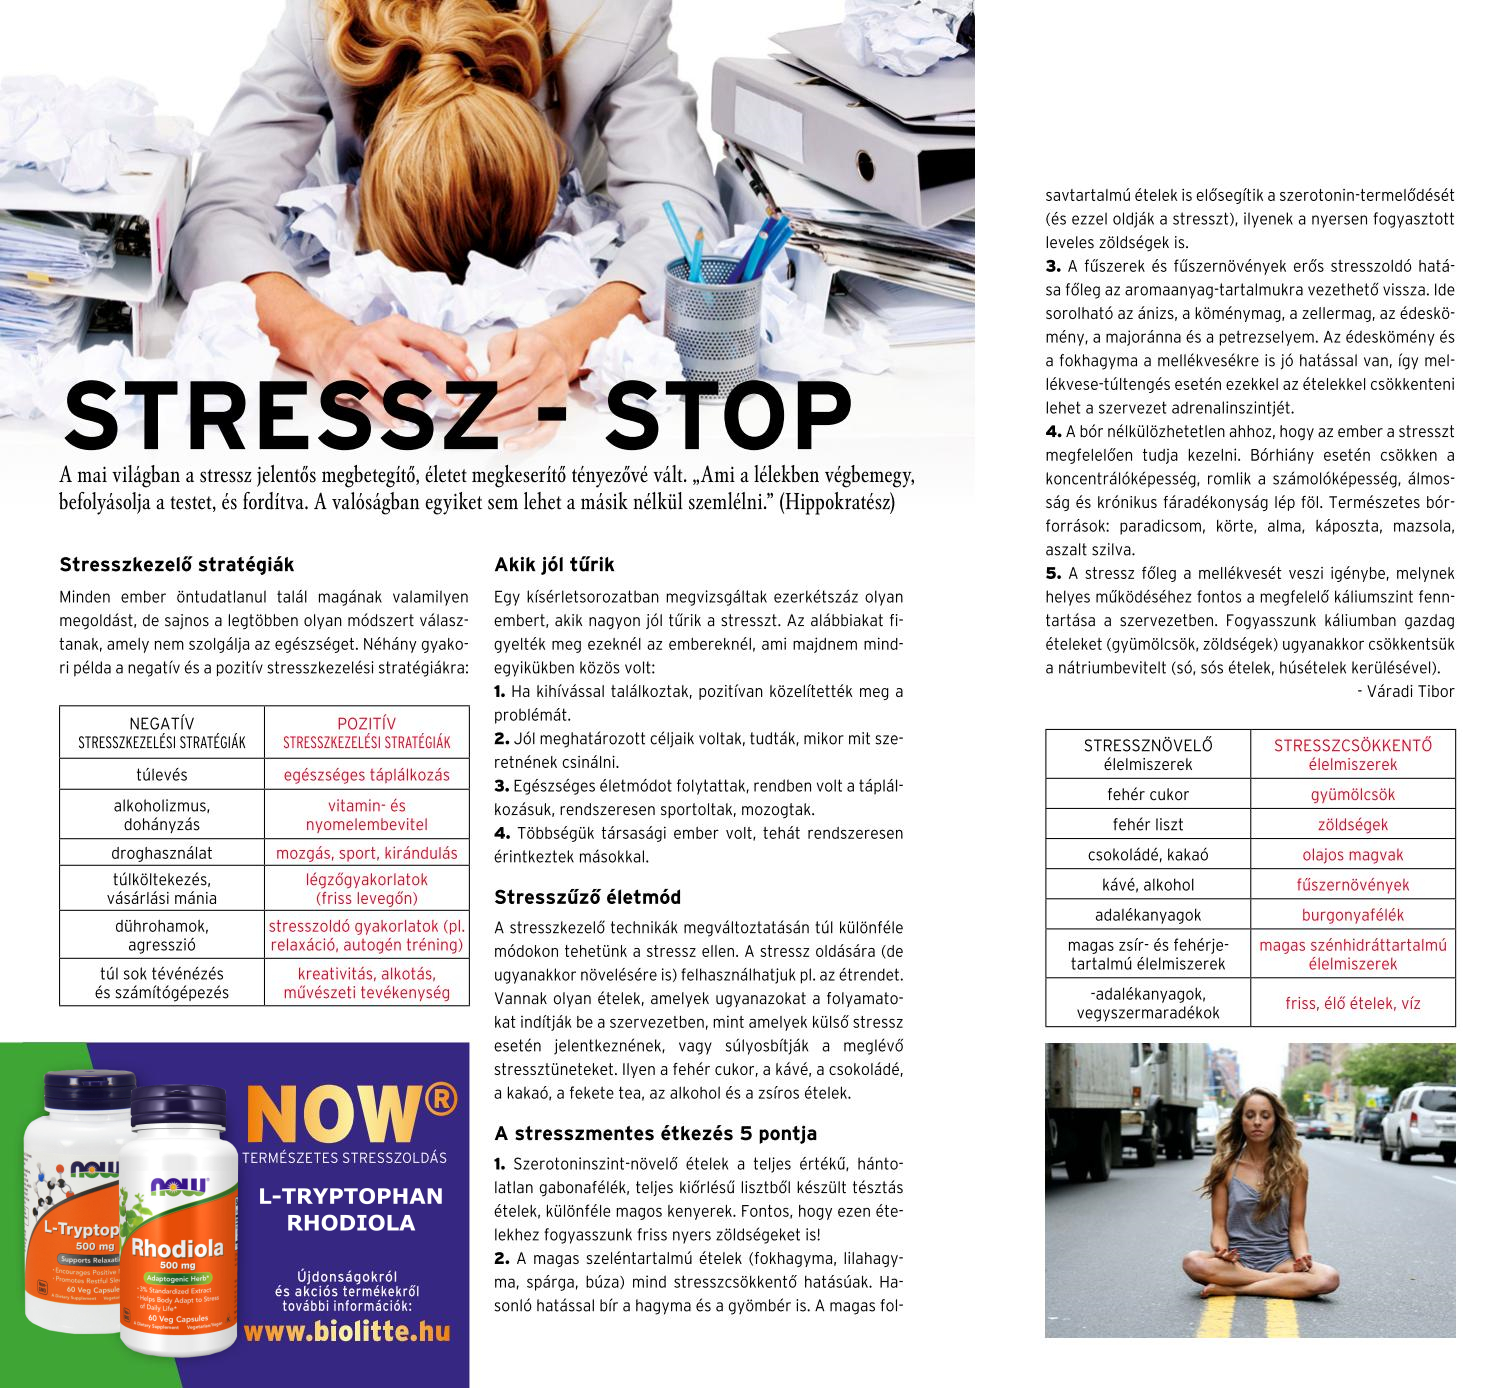 Stressz stop